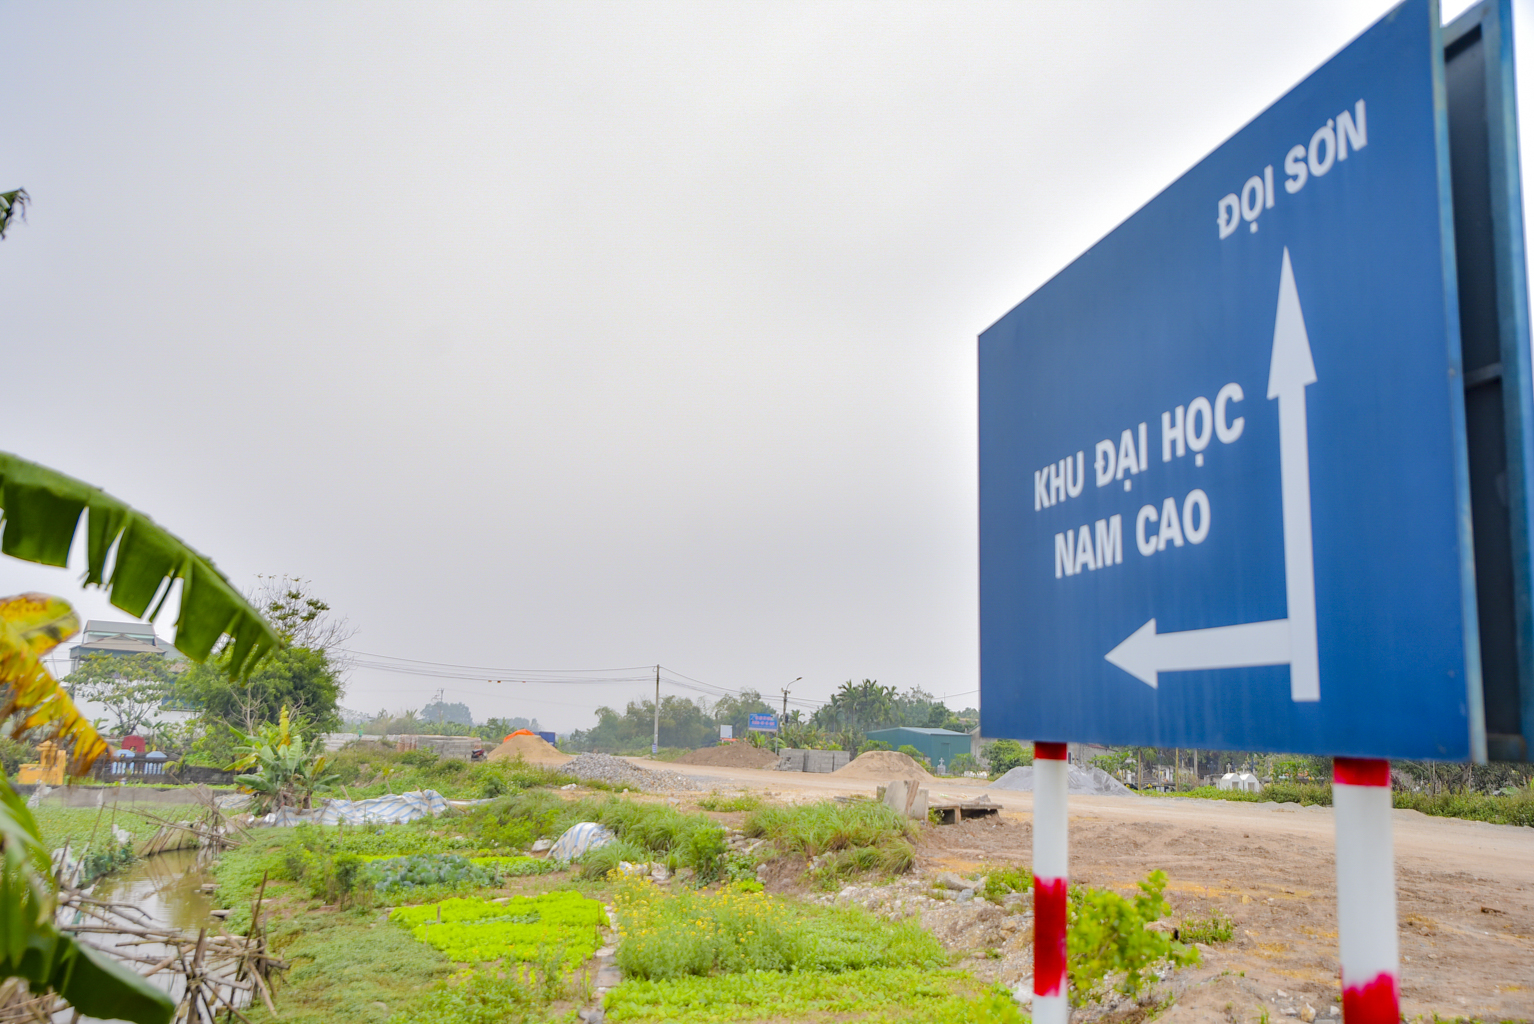 Khu đại học rộng thứ 2 Việt Nam đang xây dựng, tổng mức đầu tư 19.000 tỷ, đủ chỗ cho 80.000 sinh viên - Ảnh 1.